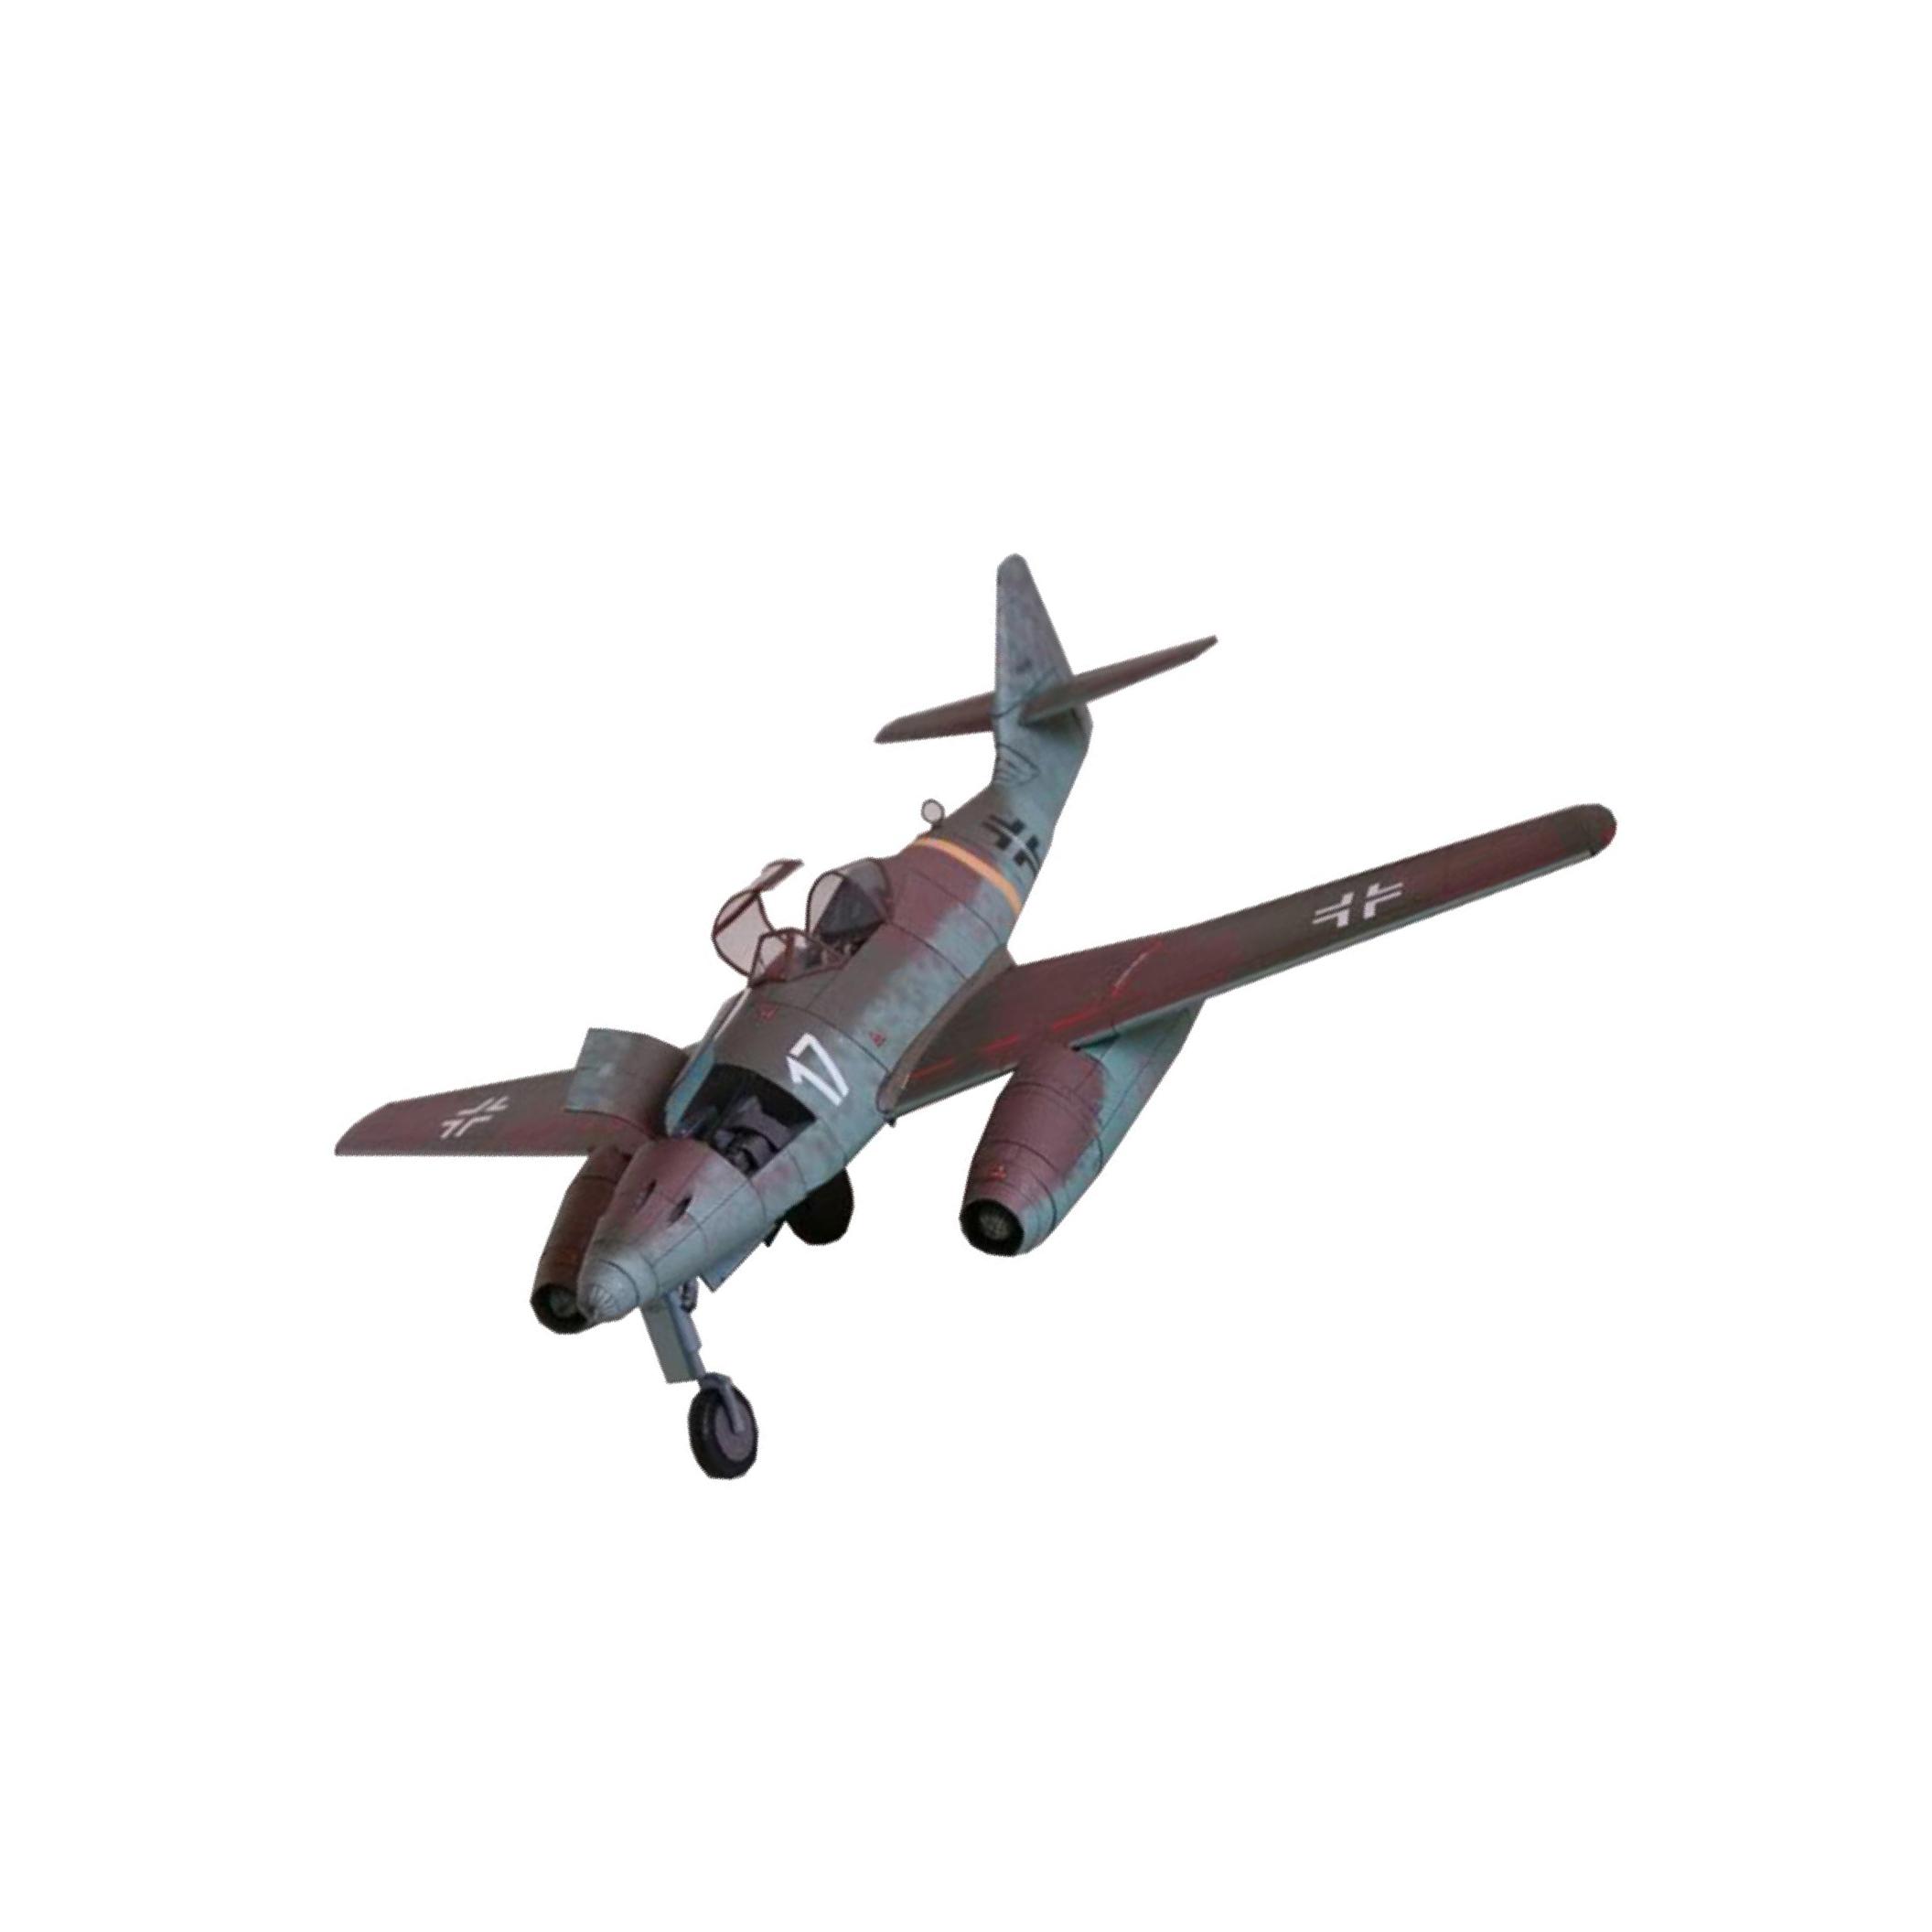 Cao Cấp Đức 262 Máy Bay Chiến Đấu mô hình máy bay Bộ linh kiện 1 33 Quy Mô GPM Tailor-Made Thanh Thiếu Niên Cho